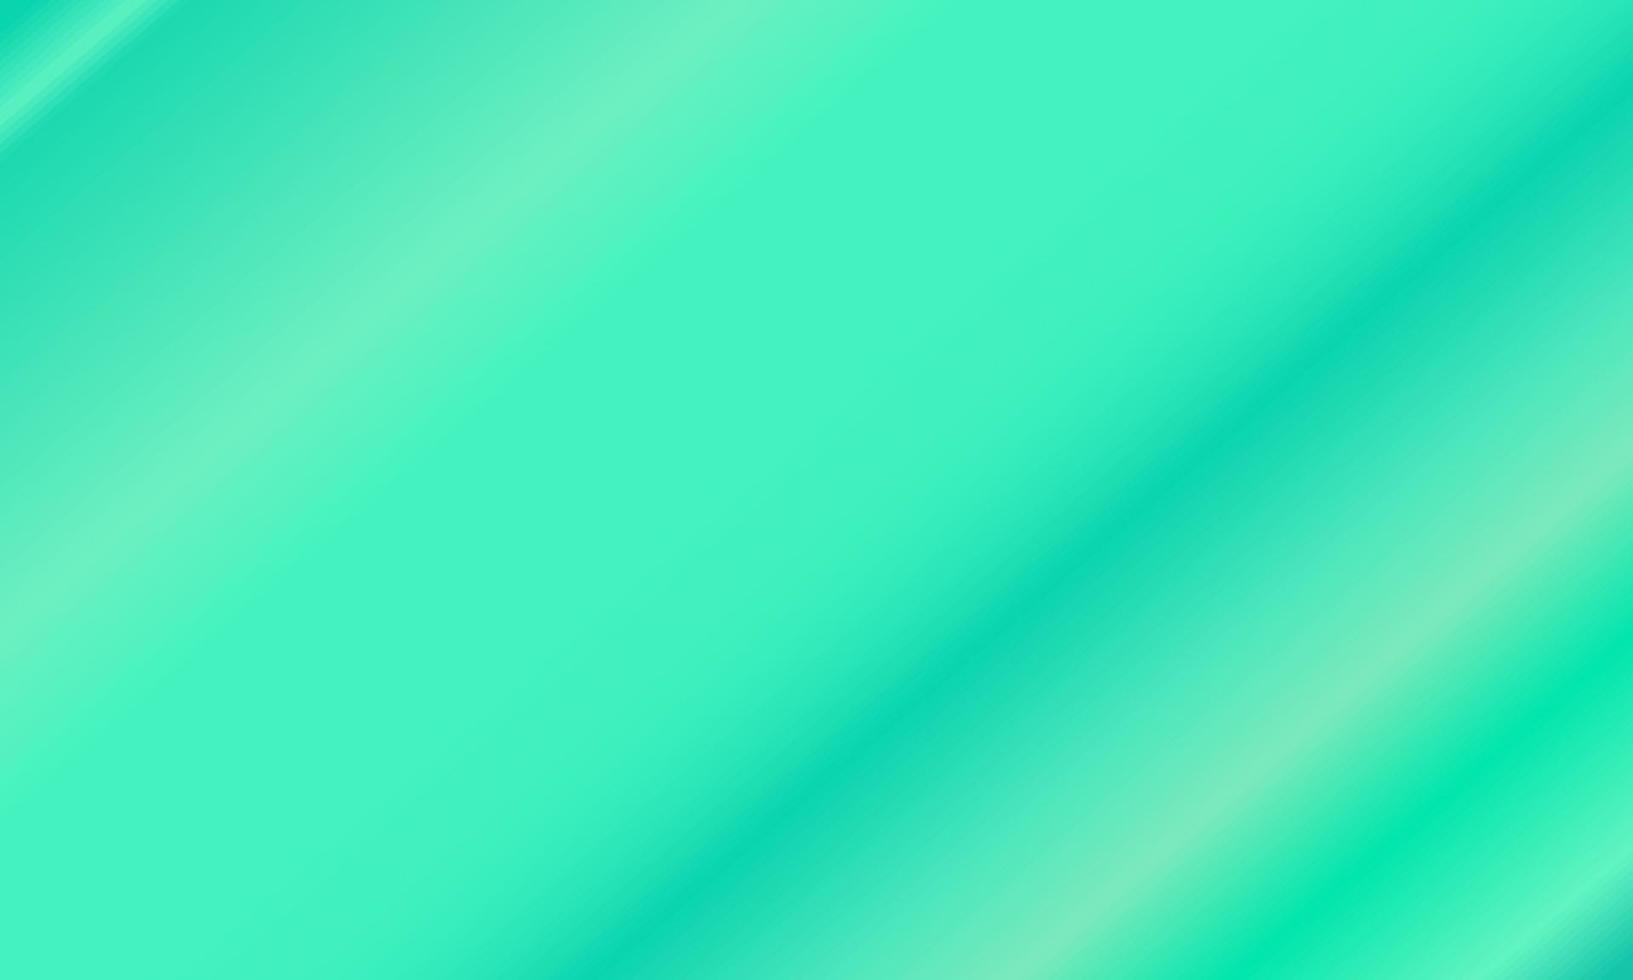 Tosca grüner und weißer diagonaler Farbverlauf. abstrakter, einfacher, moderner und farbiger Stil. ideal für hintergrund, tapete, karte, cover, poster, banner oder flyer vektor